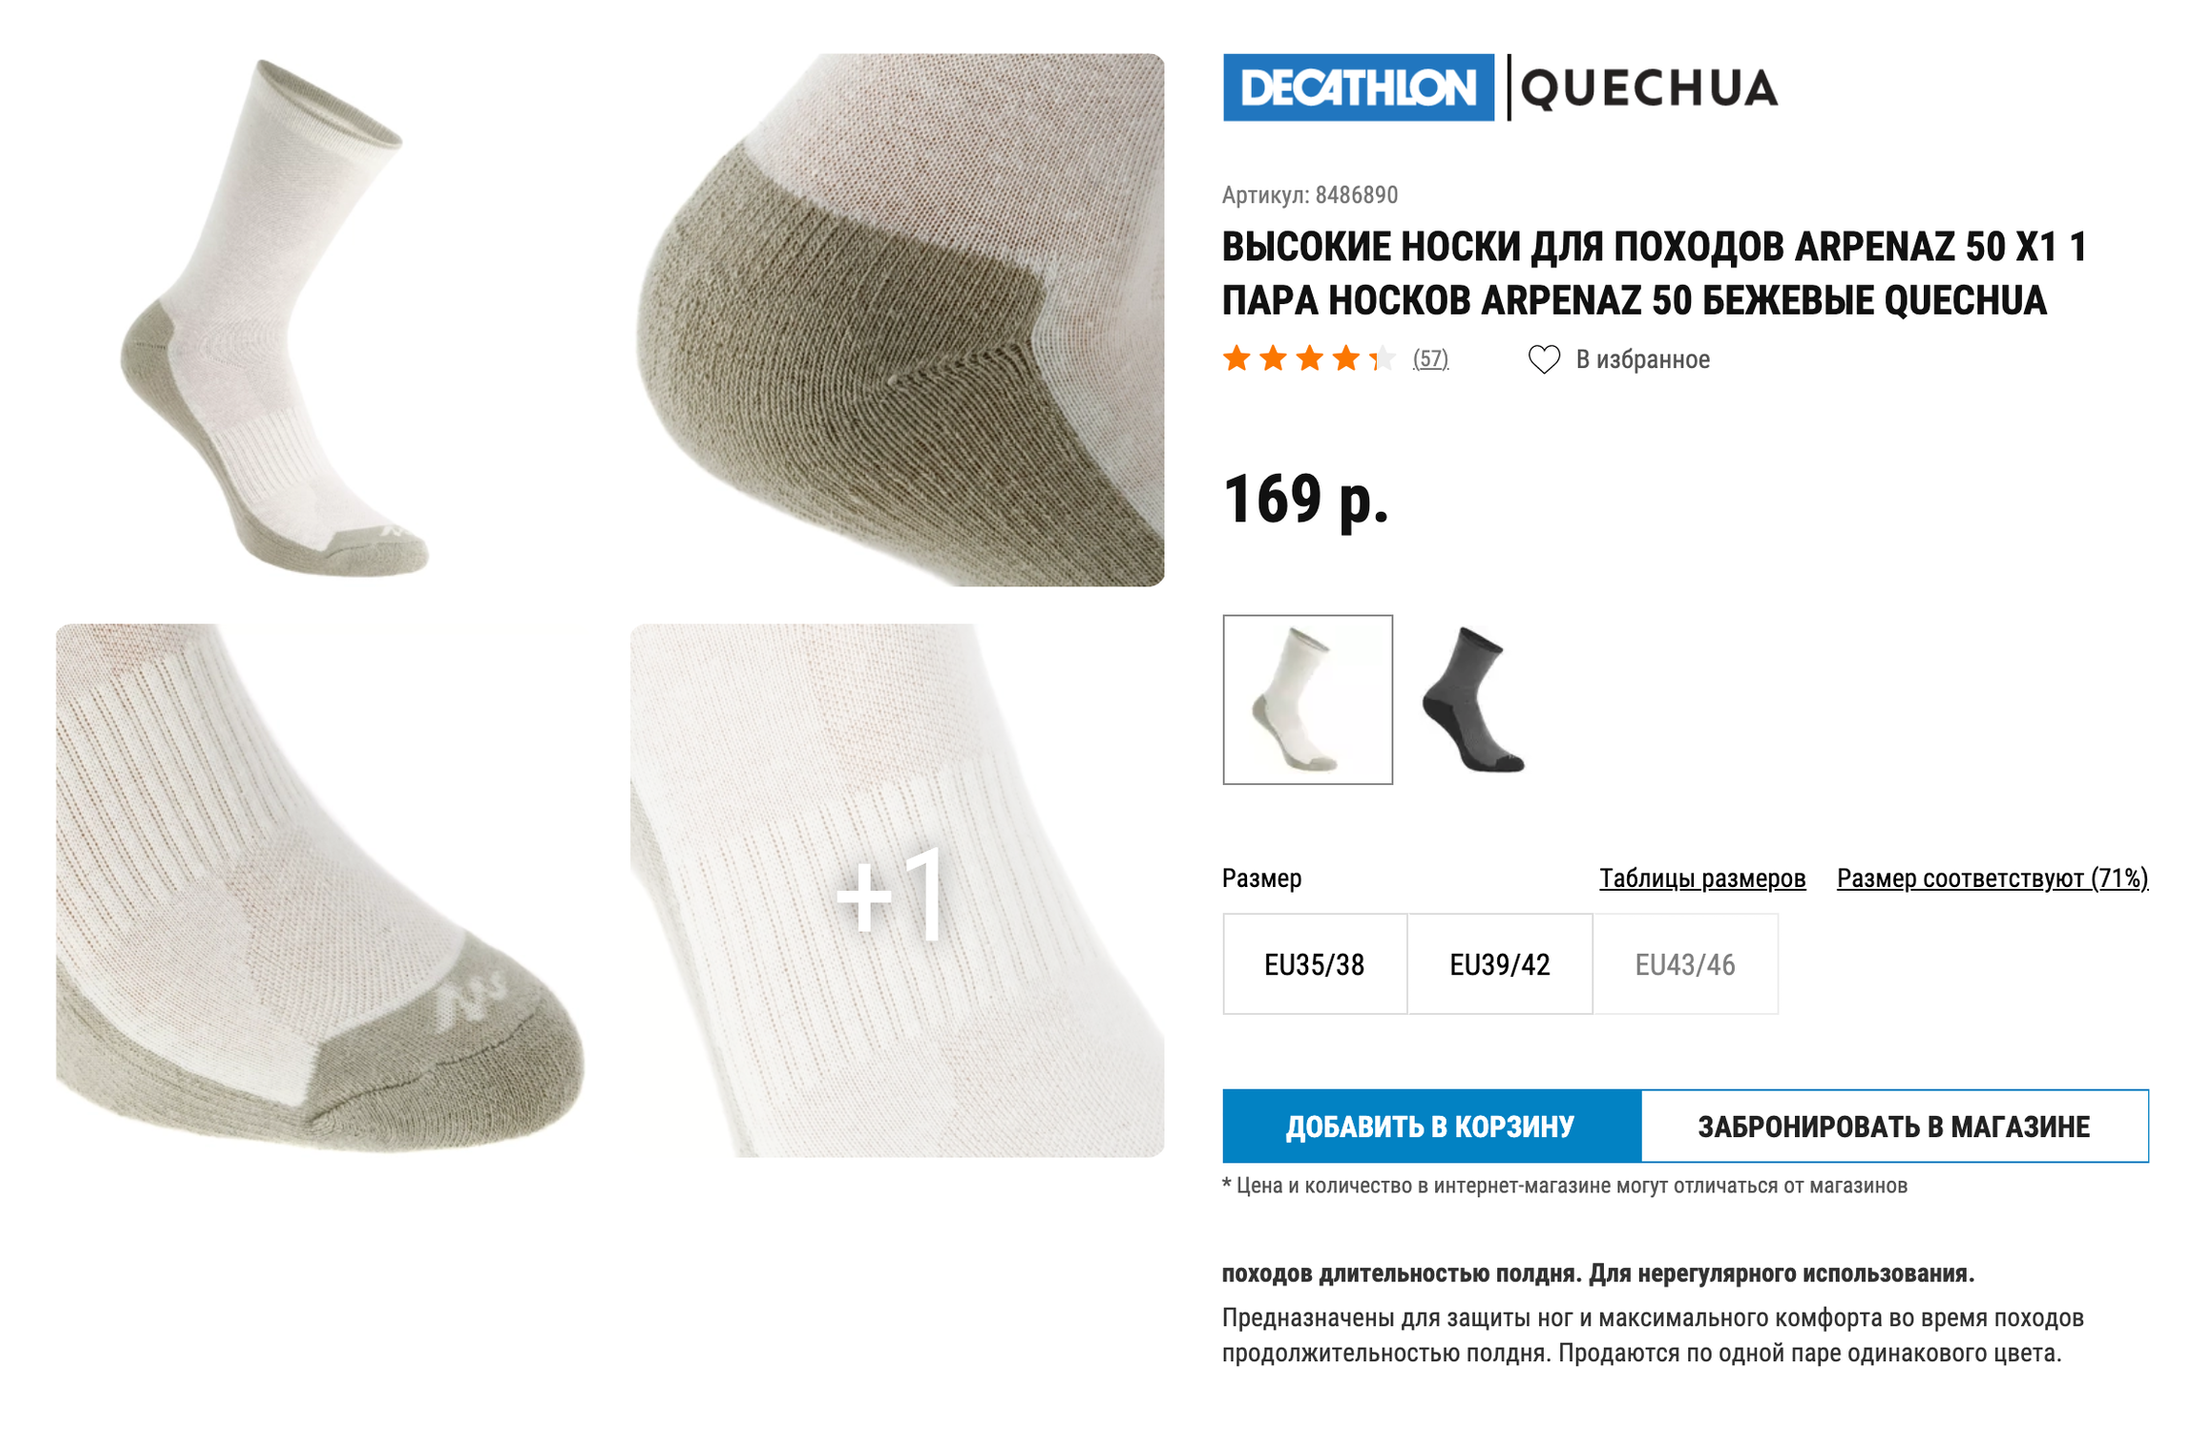 Подходящие носки можно купить по цене от 160 ₽. Источник: «Декатлон»